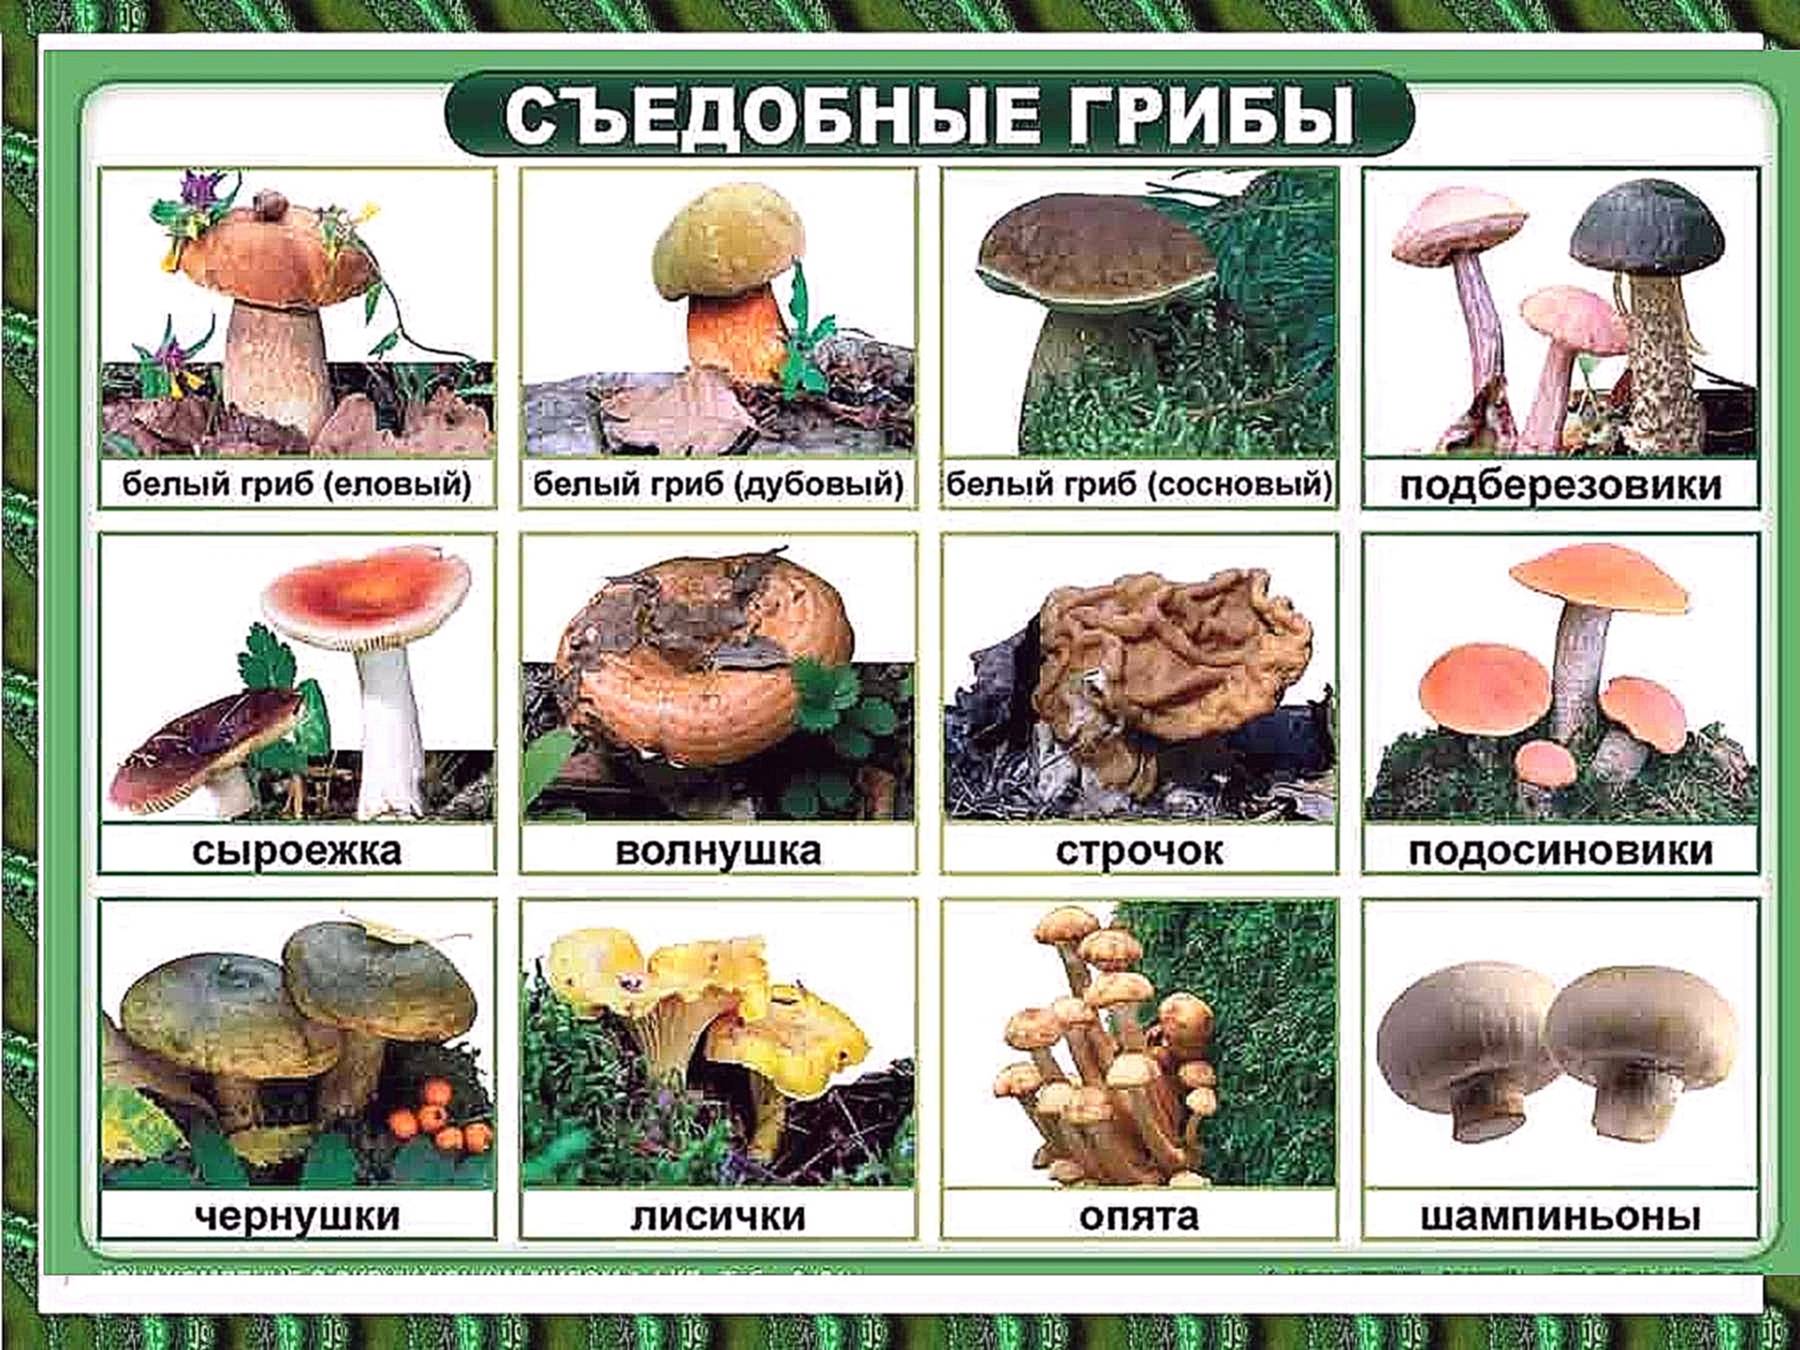 Древесные грибы разновидности и происхождение. можно ли есть древесные грибы?